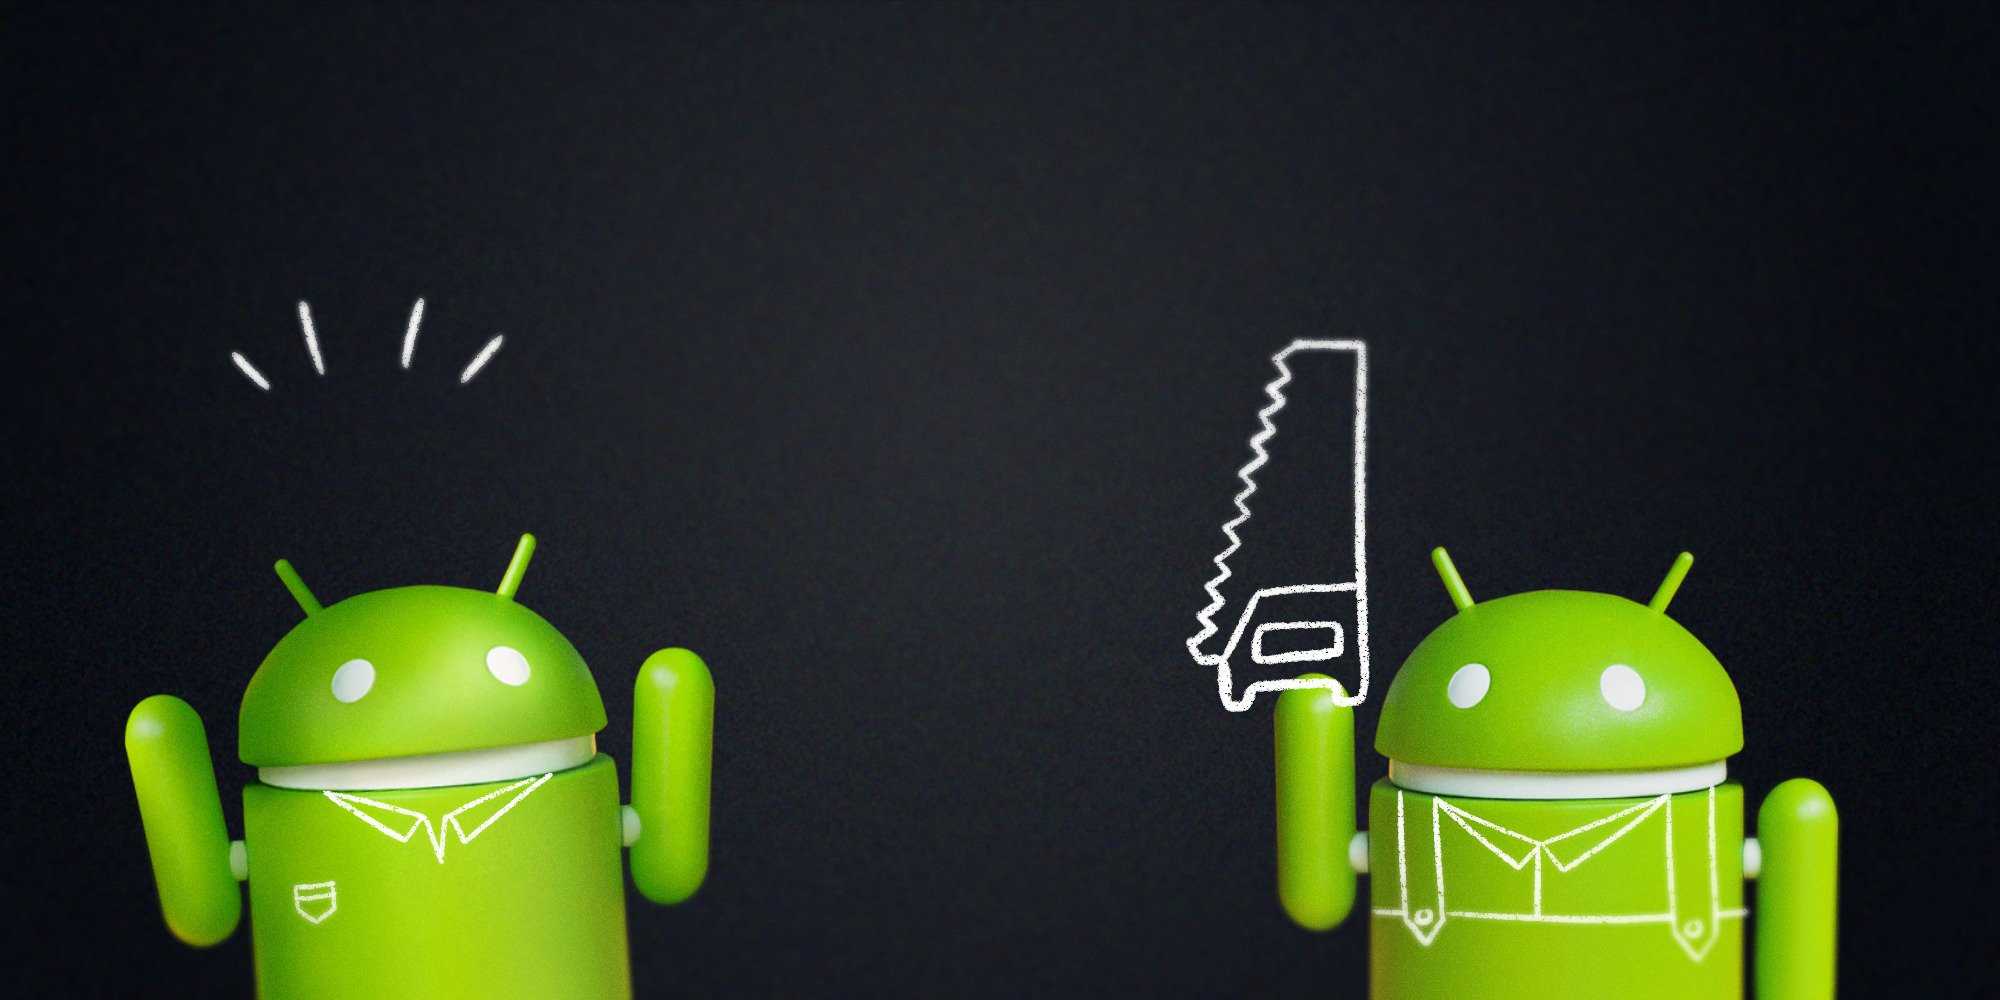 Как настраивать разрешения для приложений на телефоне android - cправка - android